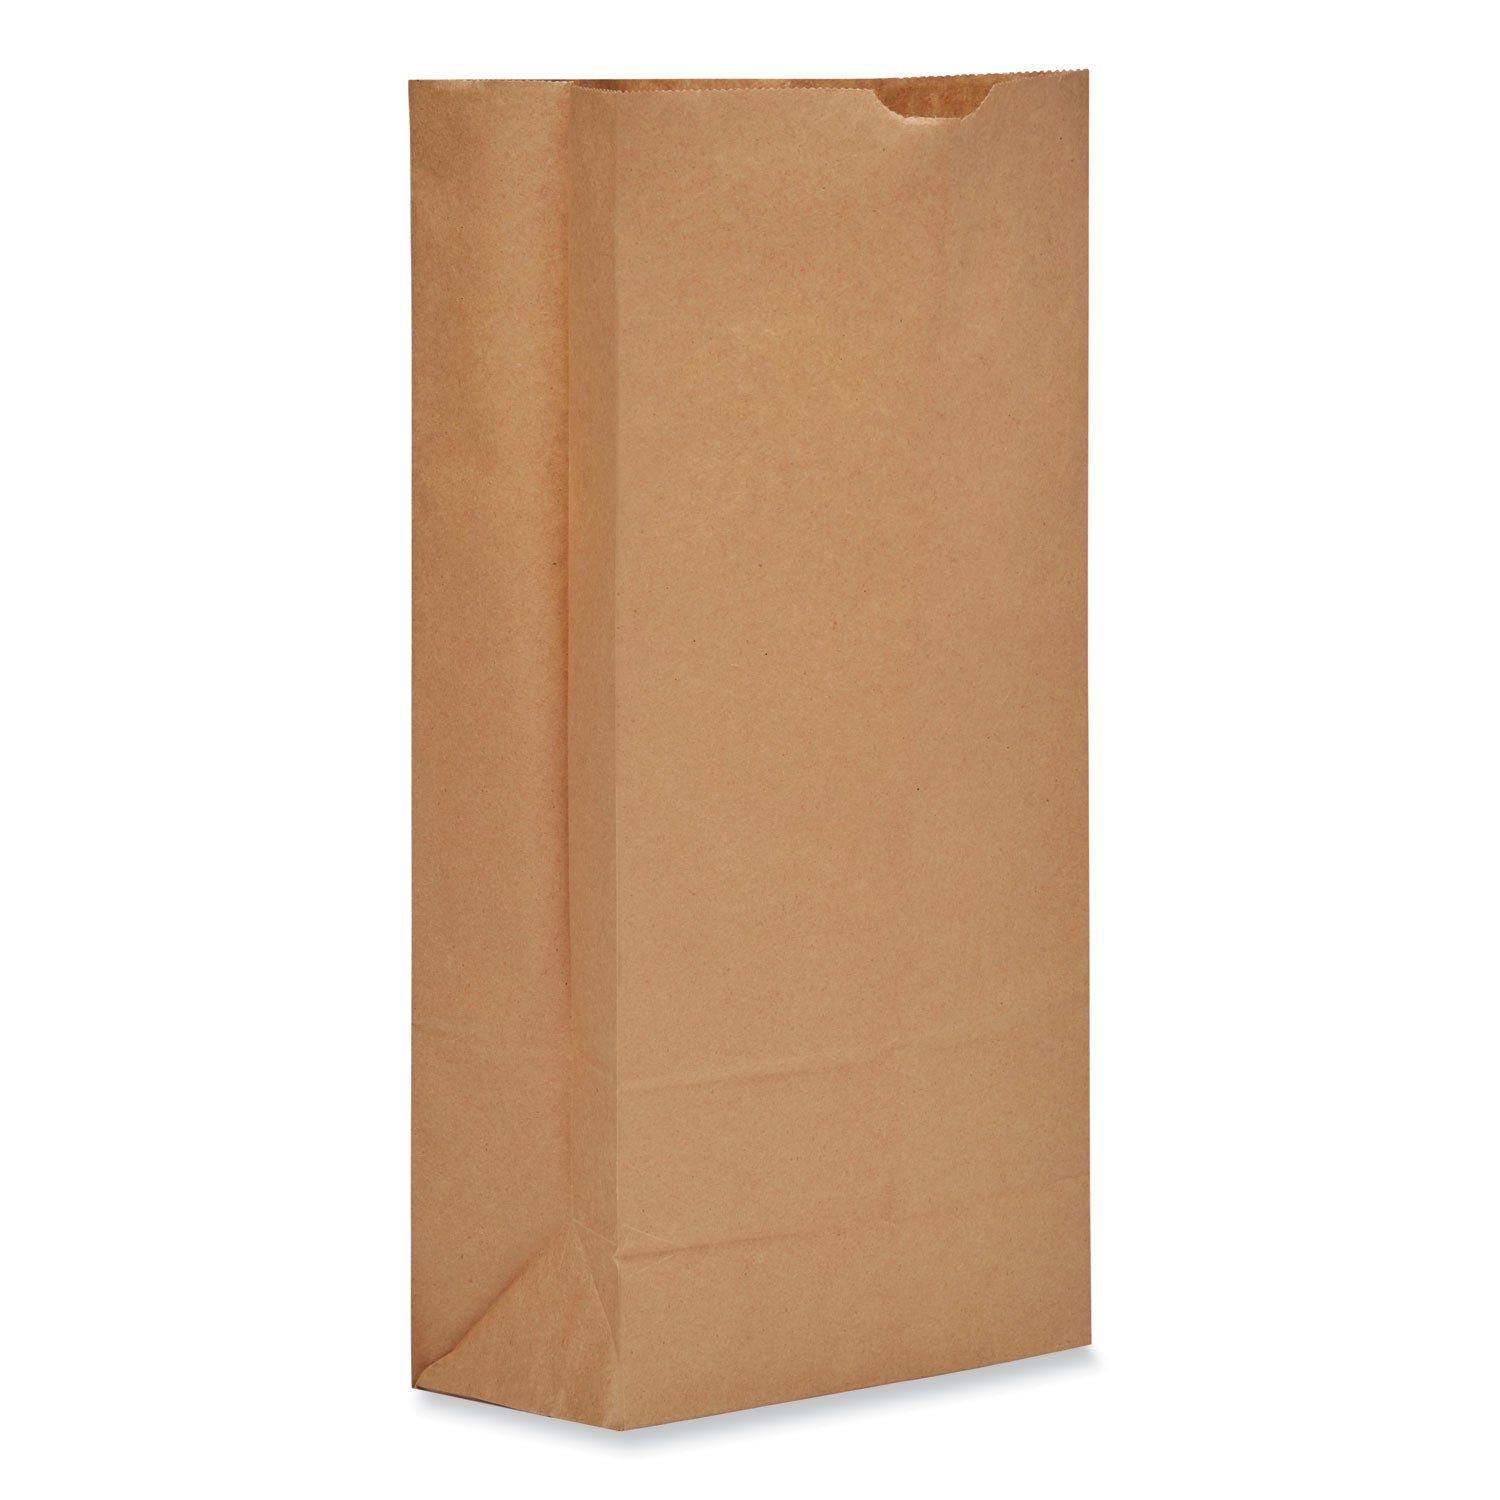 grocery-paper-bags-50-lb-capacity-#25-825-x-594-x-1613-kraft-500-bags_baggh25 - 1